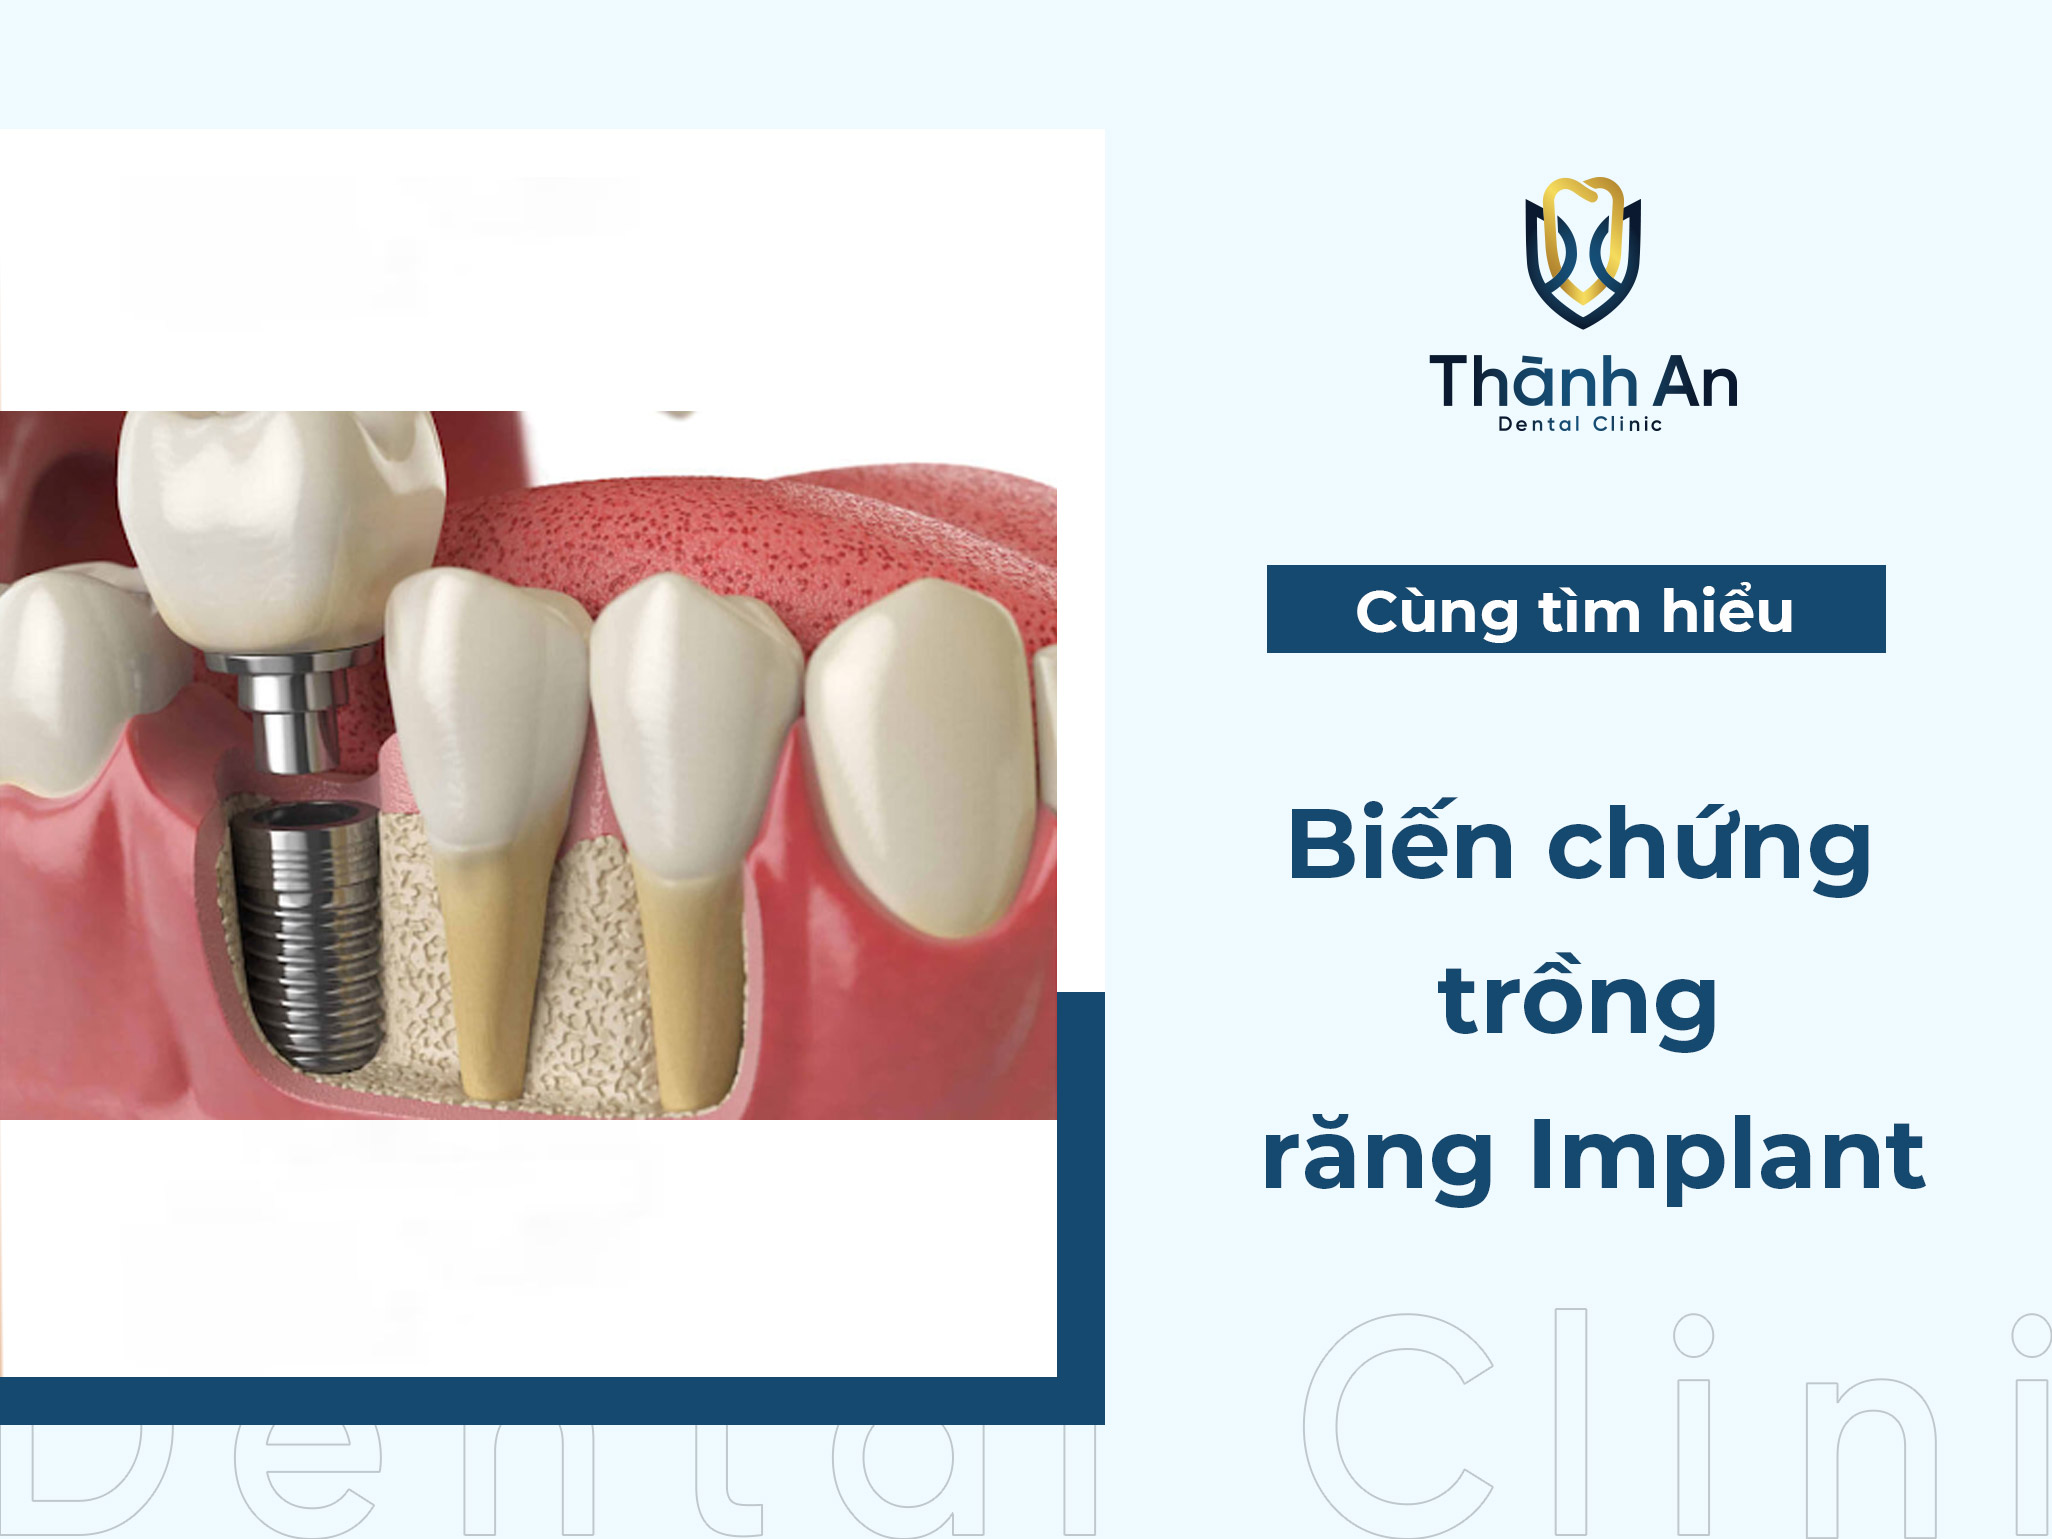 Biến chứng và tác hại của việc trồng răng Implant là gì?